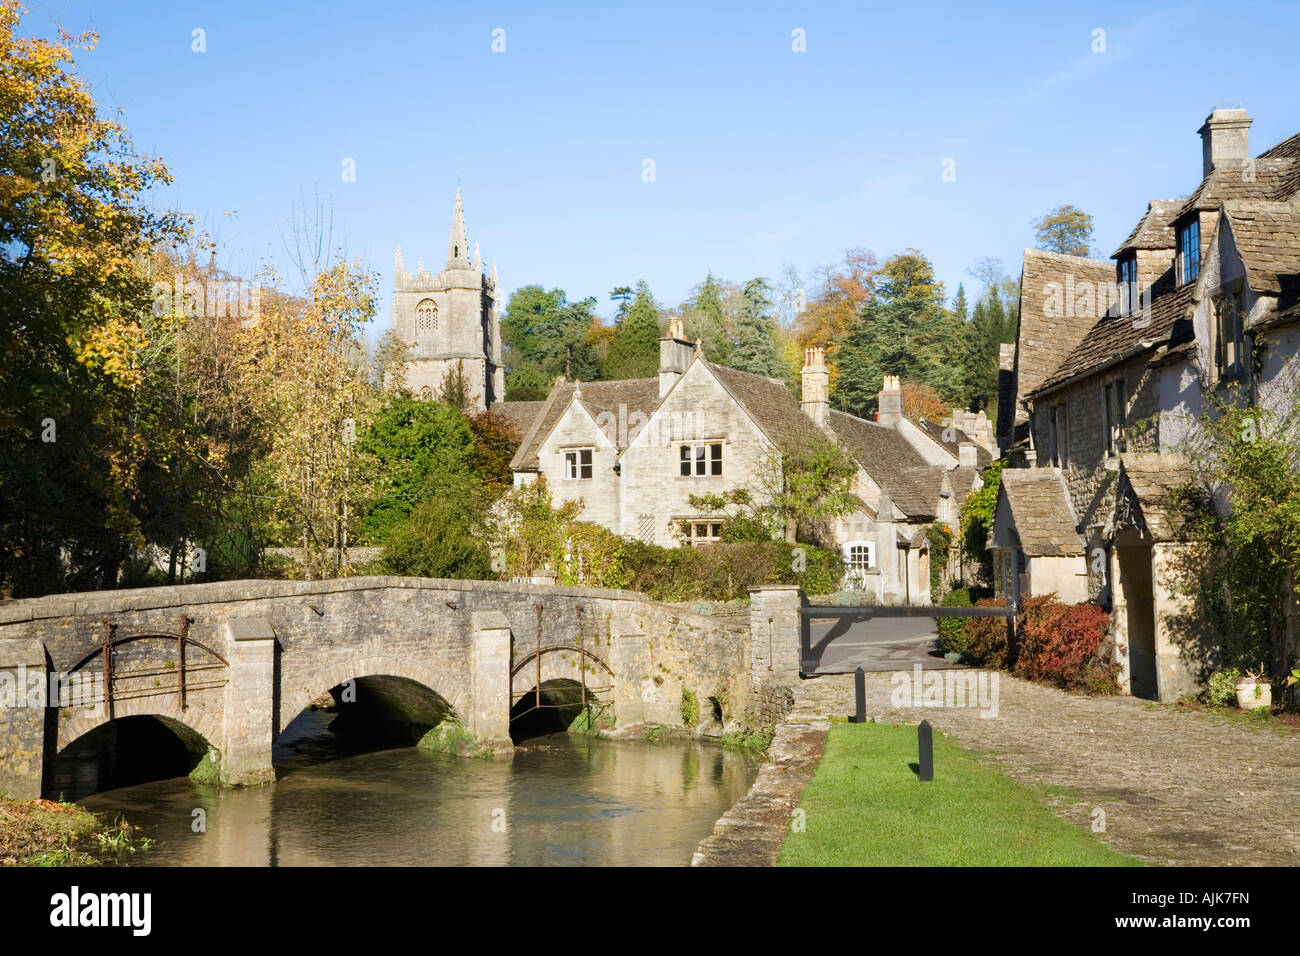 Castle Coombe in Herbst-Wiltshire England Bild 3 von 4 in einer Folge der vier Jahreszeiten Stockfoto